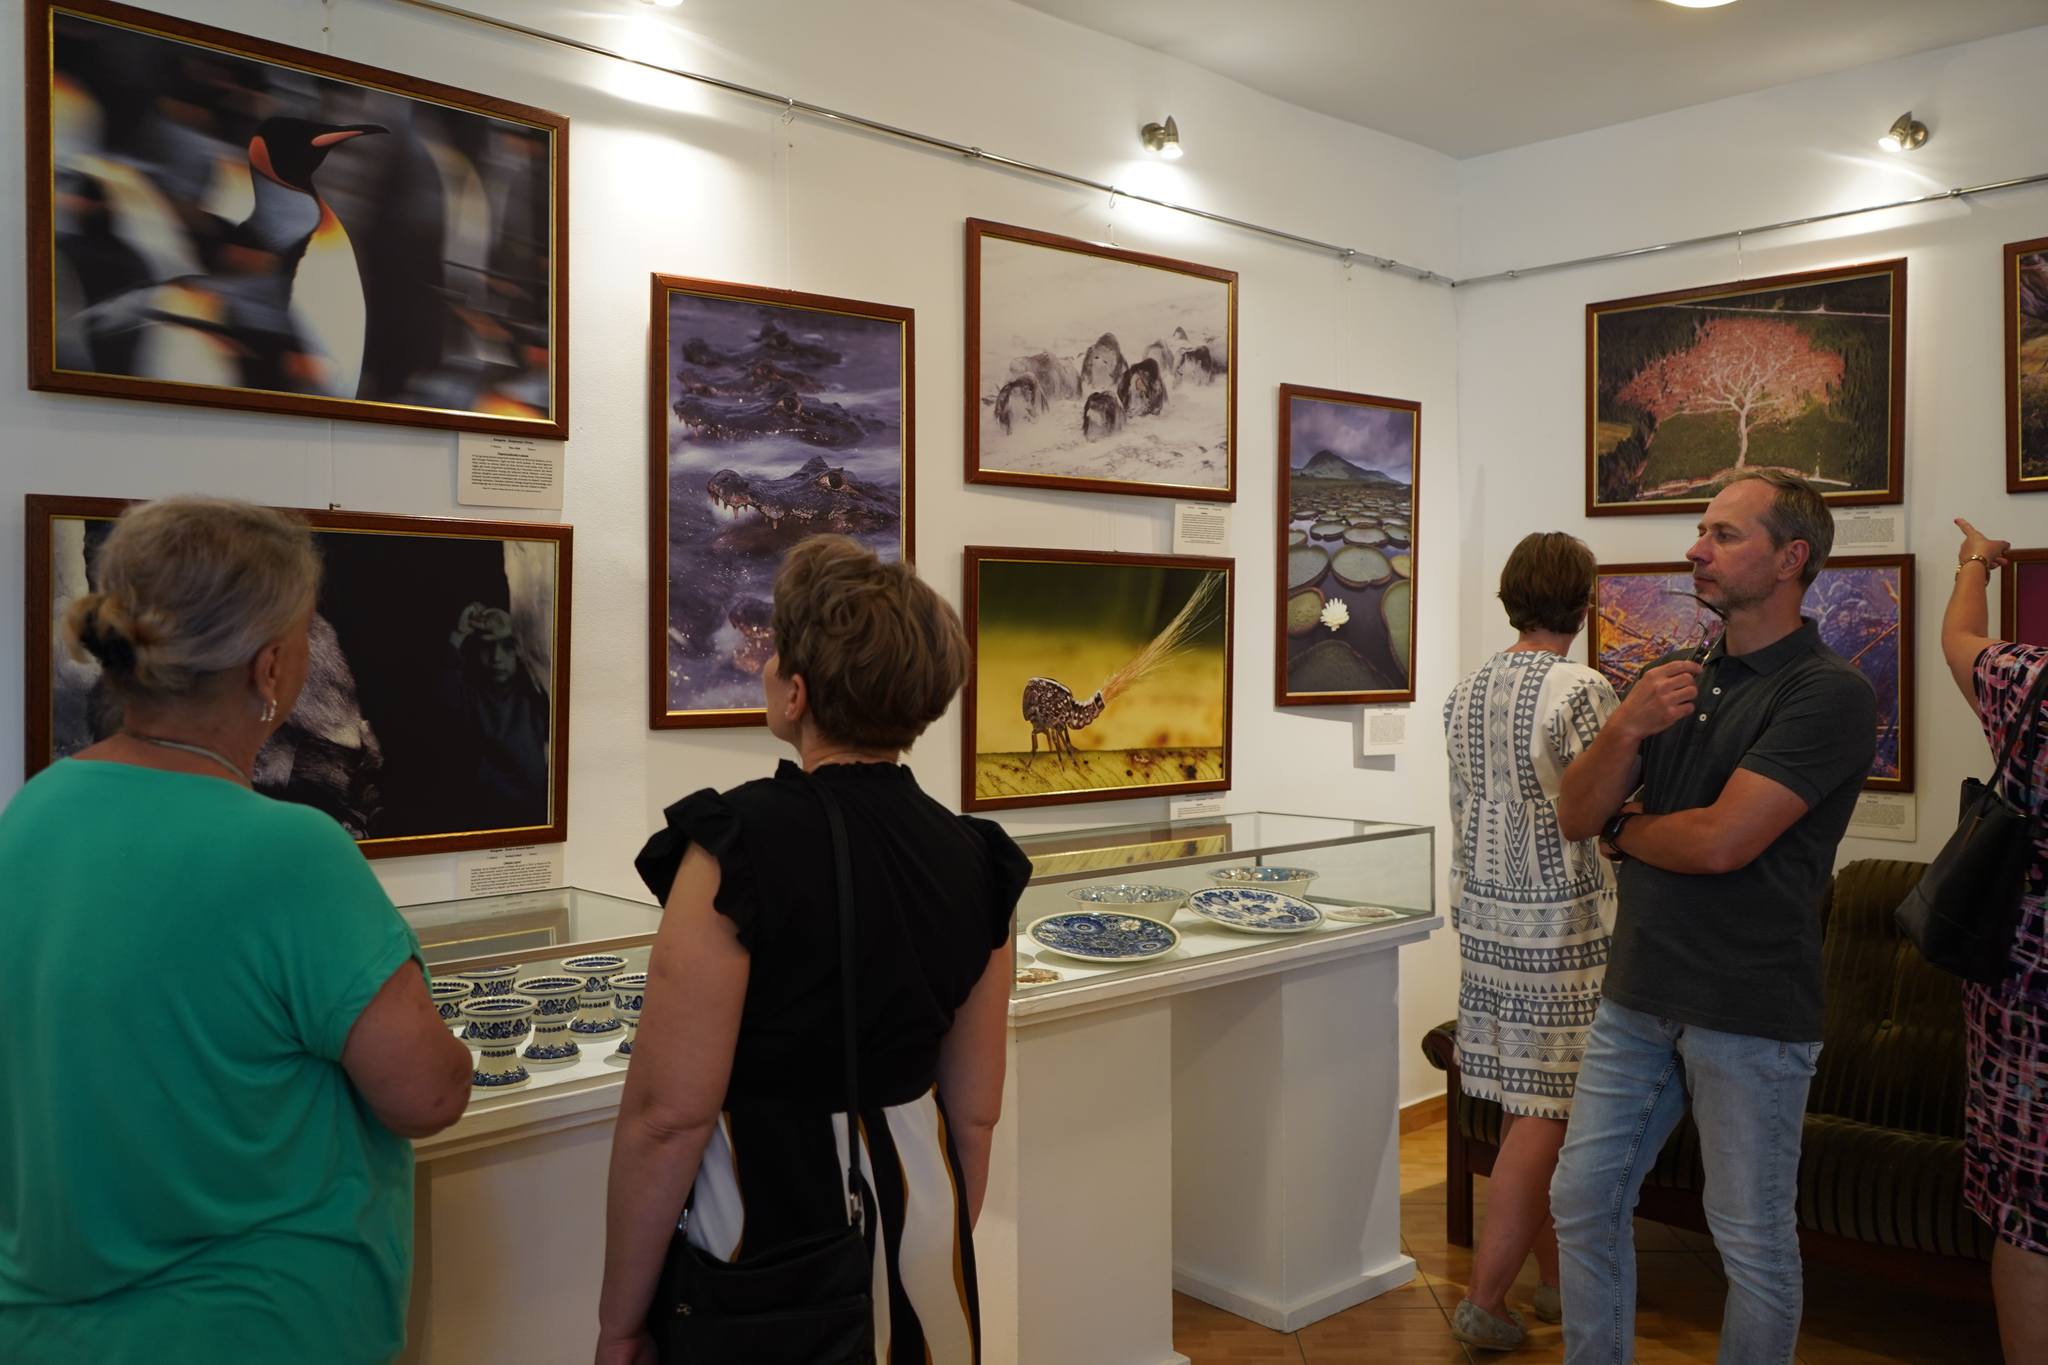 Zdjęcie przedstawia grupę ludzi oglądających wystawę w kolskim muzeum. Na ścianach wiszą różne obrazy, w większości przedstawiające naturę i zwierzęta, takie jak pingwin, ważka, rośliny wodne i krokodyle